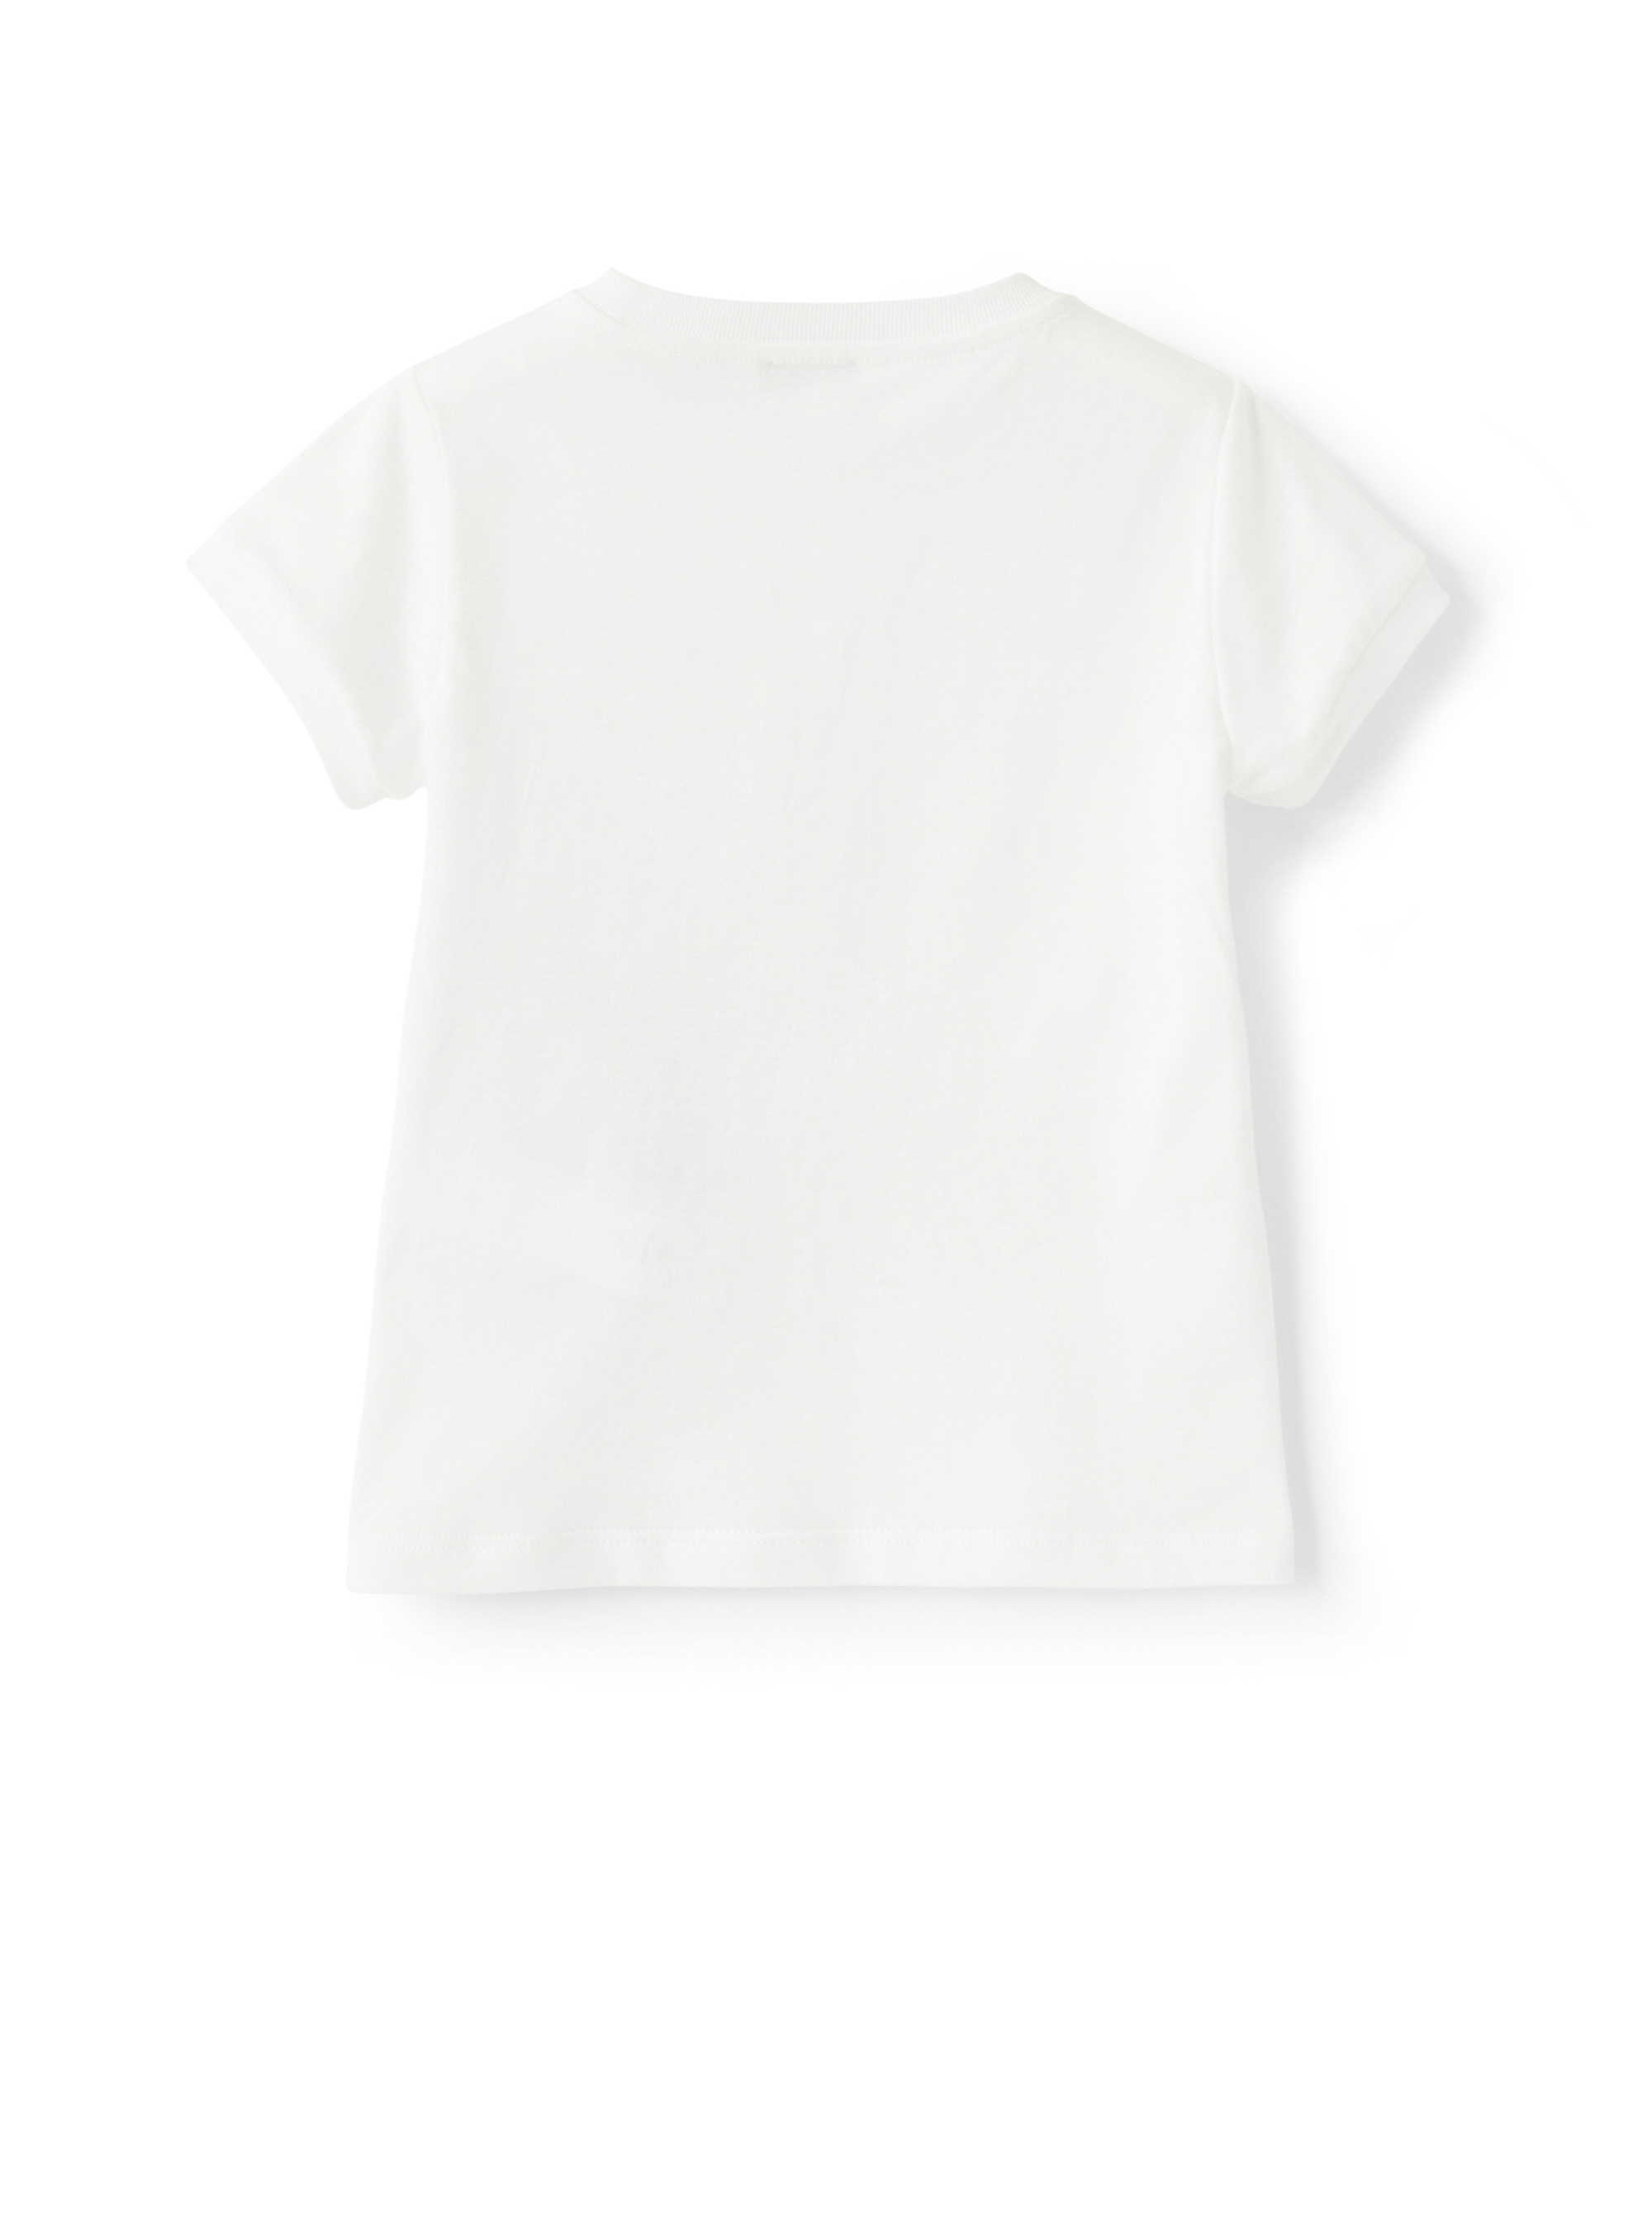 Weißes T-Shirt mit applizierter Tulpe - Weiss | Il Gufo